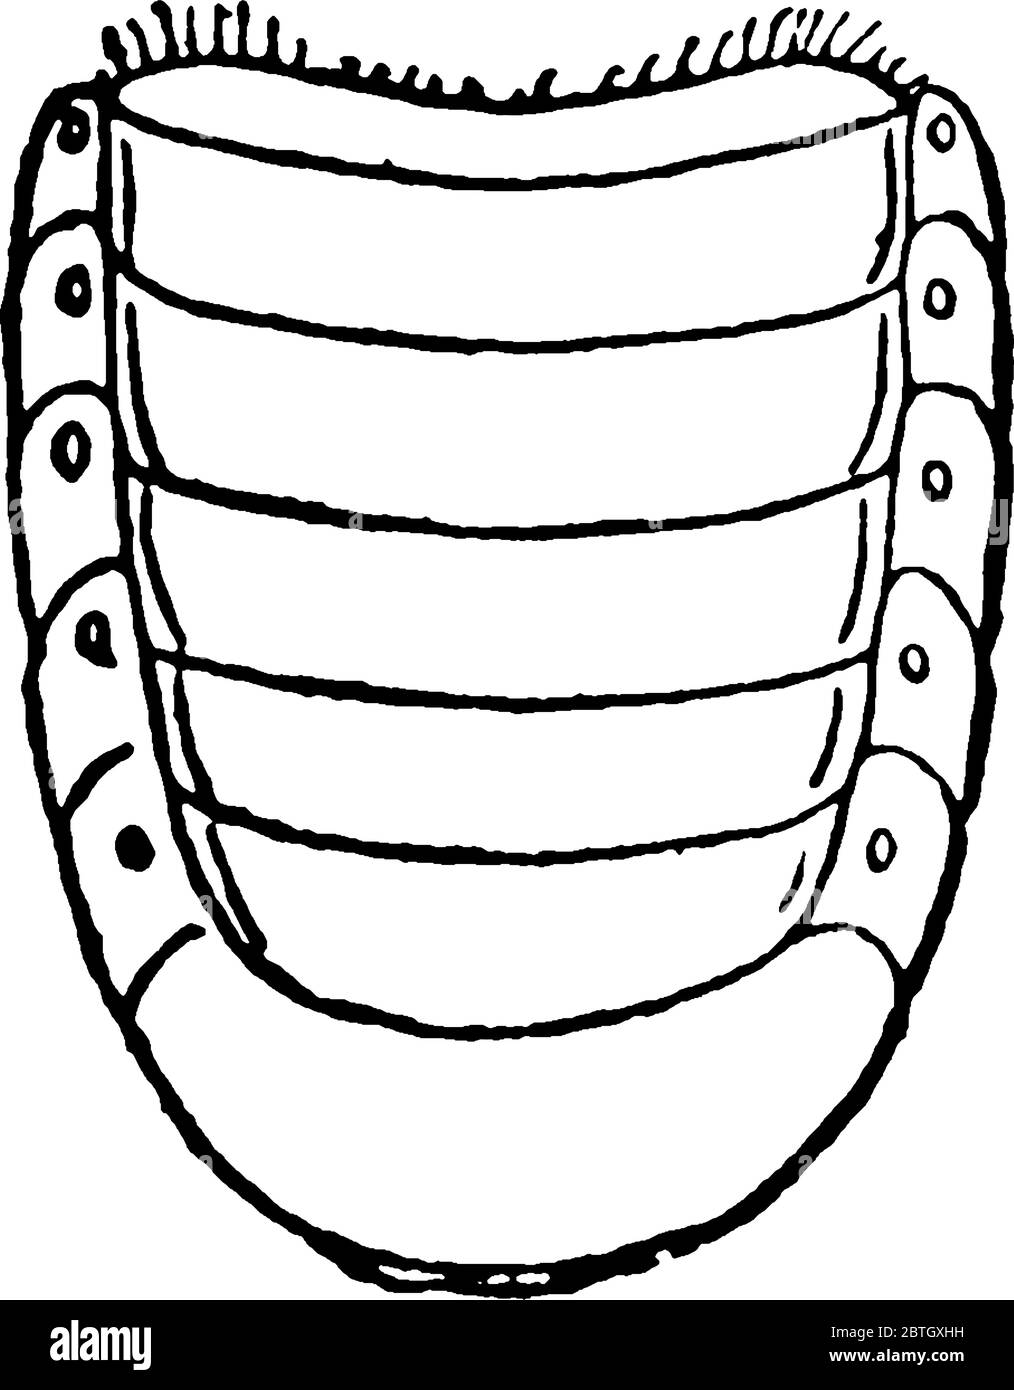 May Beetle è un coleottero rosso-marrone con coperture dell'ala lucenti, conosciuto anche come June Bug. Questa figura rappresenta l'addome di May Beetle, il disegno di linee vintage o. Illustrazione Vettoriale